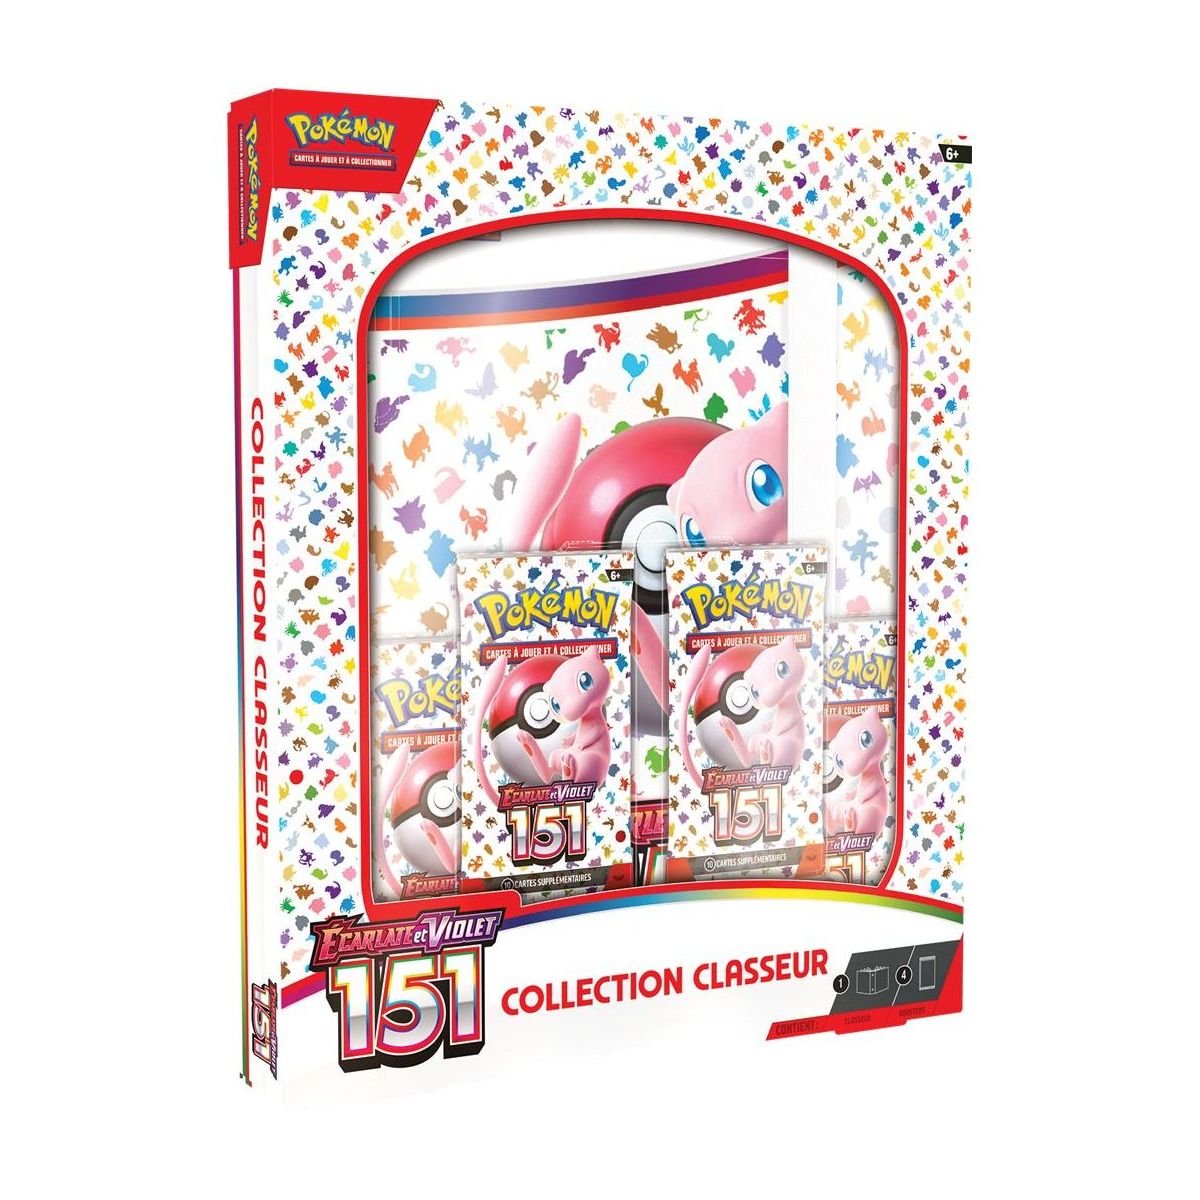 Item Pokémon - Collection binder + 4 Boosters - Scarlet and Violet - 151 -[SV03.5 - EV03.5] - FR